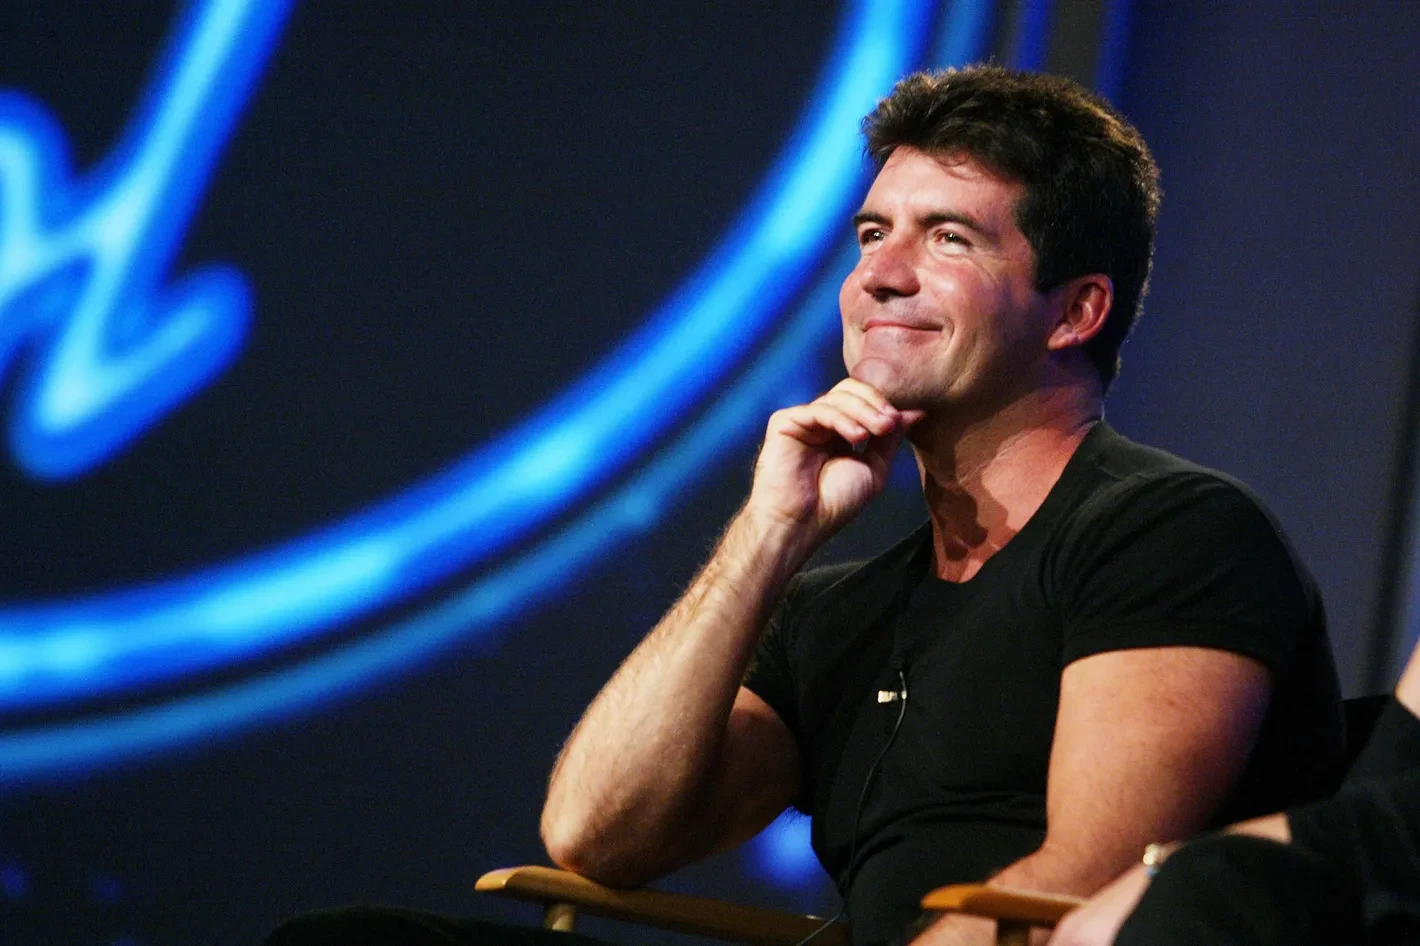 Simon Cowell in American Idol